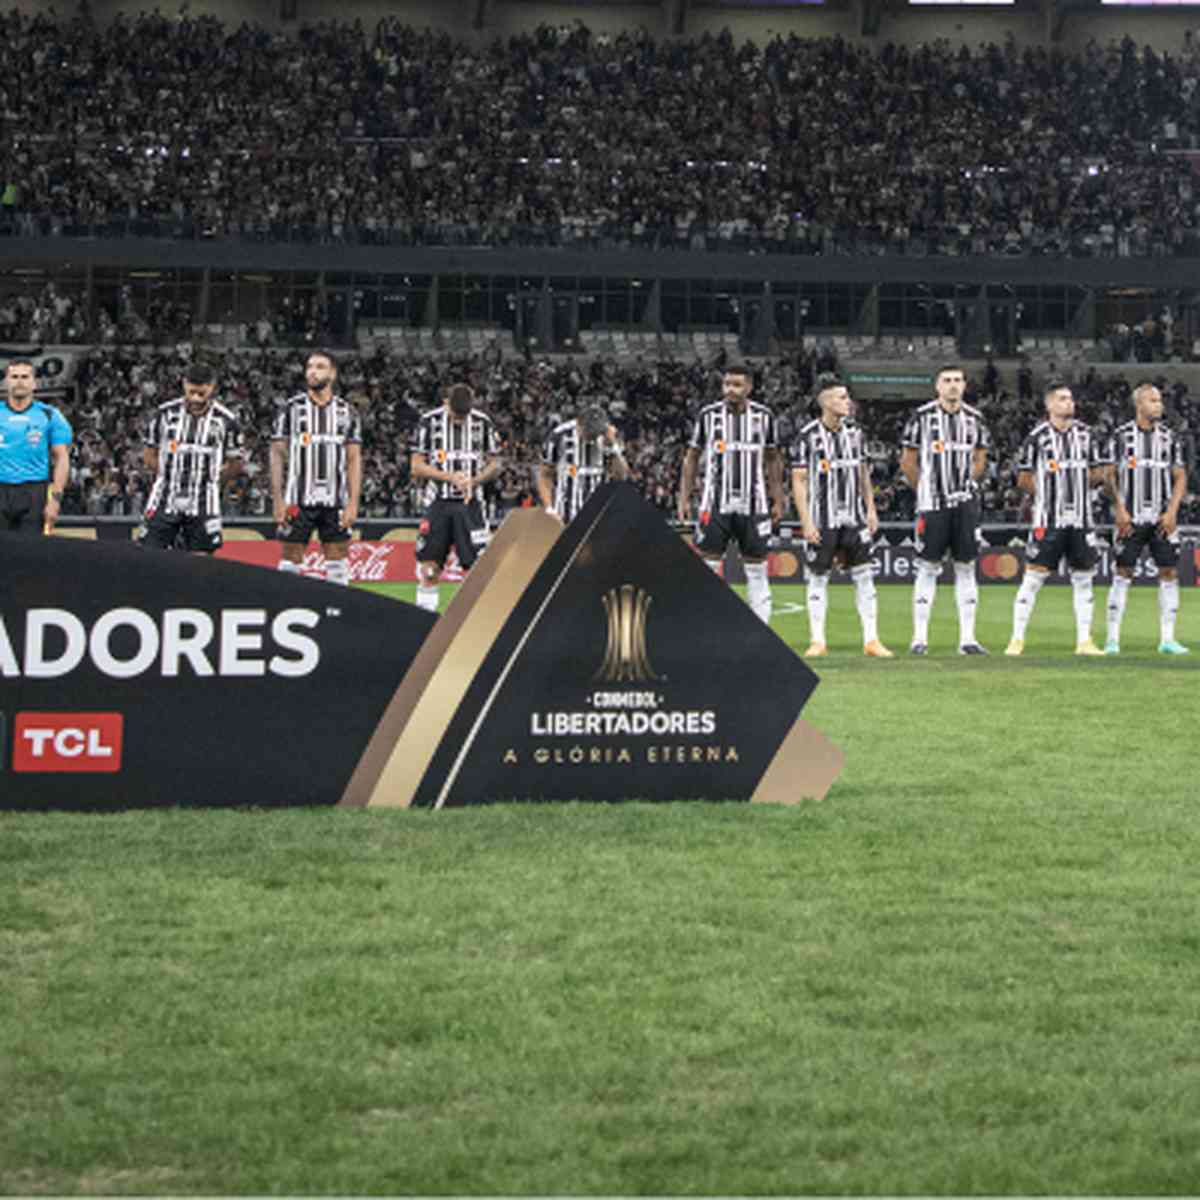 Gramado do Mineirão passa por manutenção; técnico do Atlético-MG e estádio  trocam informações, atlético-mg